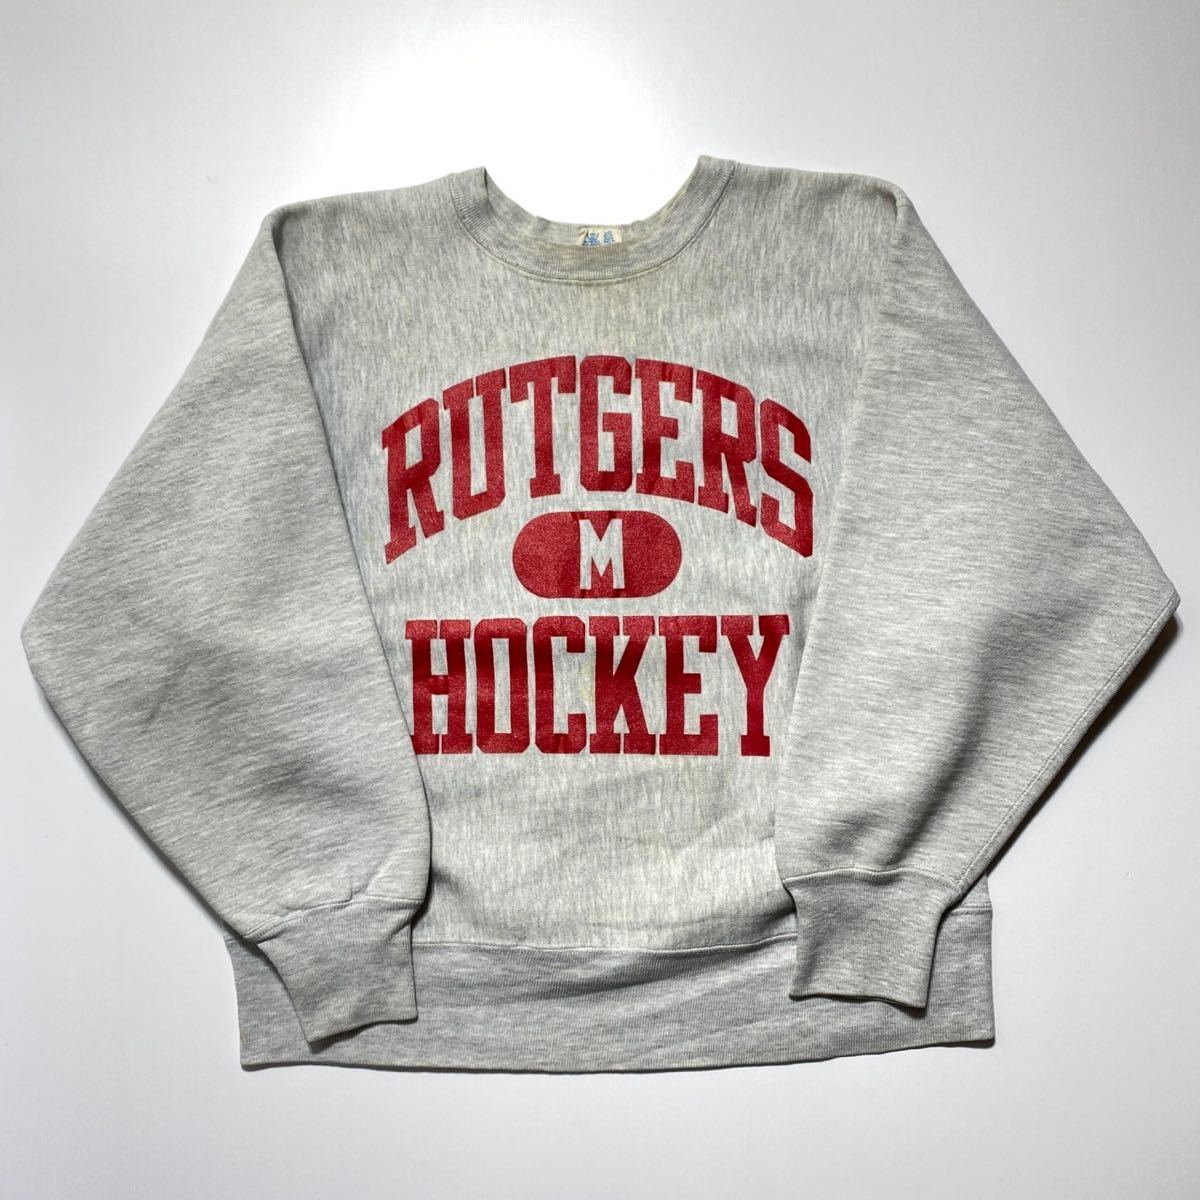 【楽ギフ_のし宛書】 【M】80s Vintage Champion Reverse Weave Rutgers Hockey 80年代 ヴィンテージ チャンピオン リバースウィーブ ラトガース ホッケー G1614 スウェットシャツ